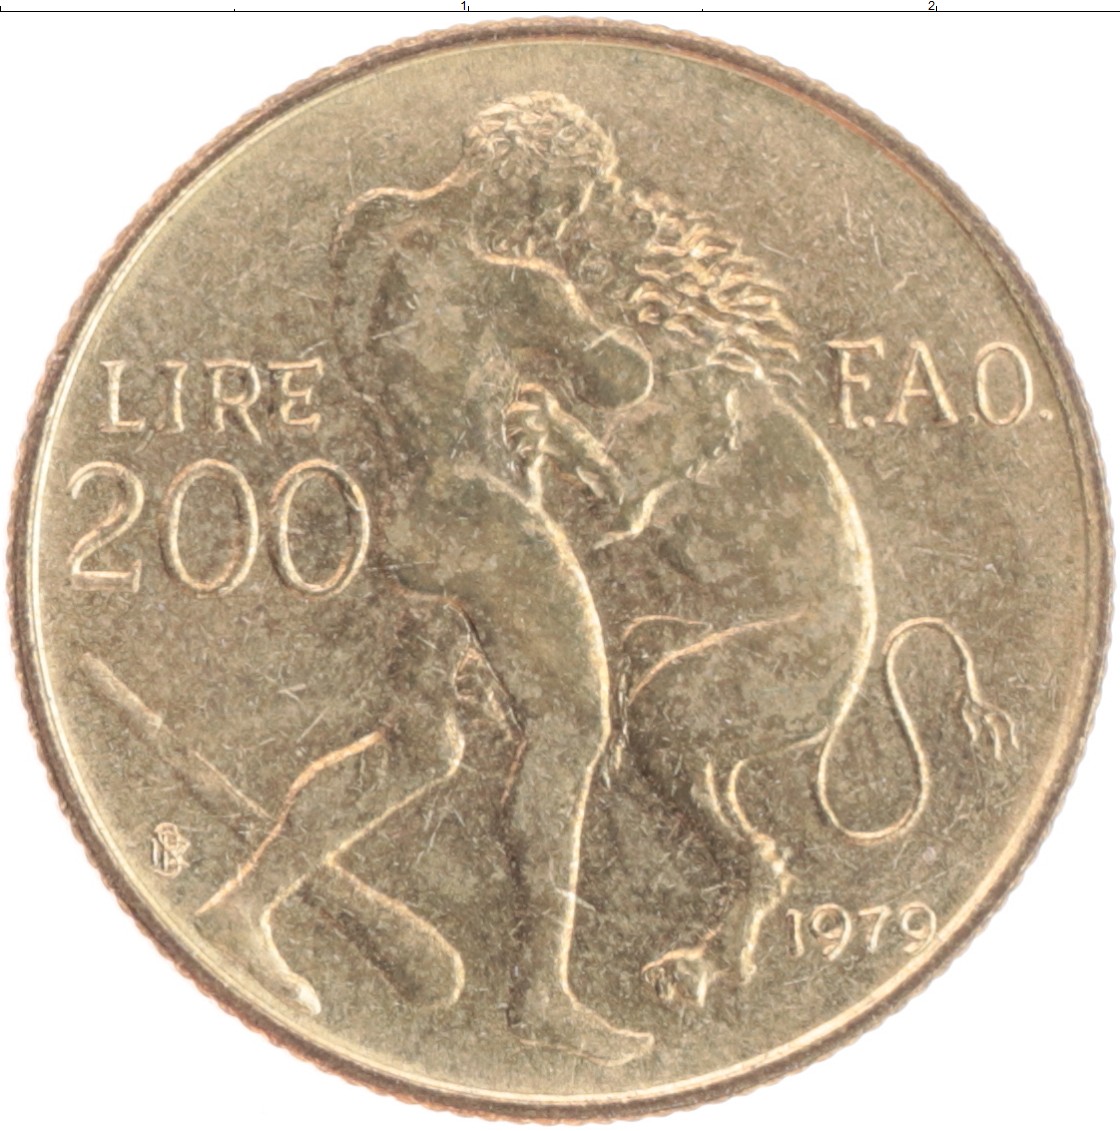 280 лир. Монета с изображением Лиры. 200 Лир в лари. Монета Сан Марино 2 2002 золото. 200 Лир в рублях.